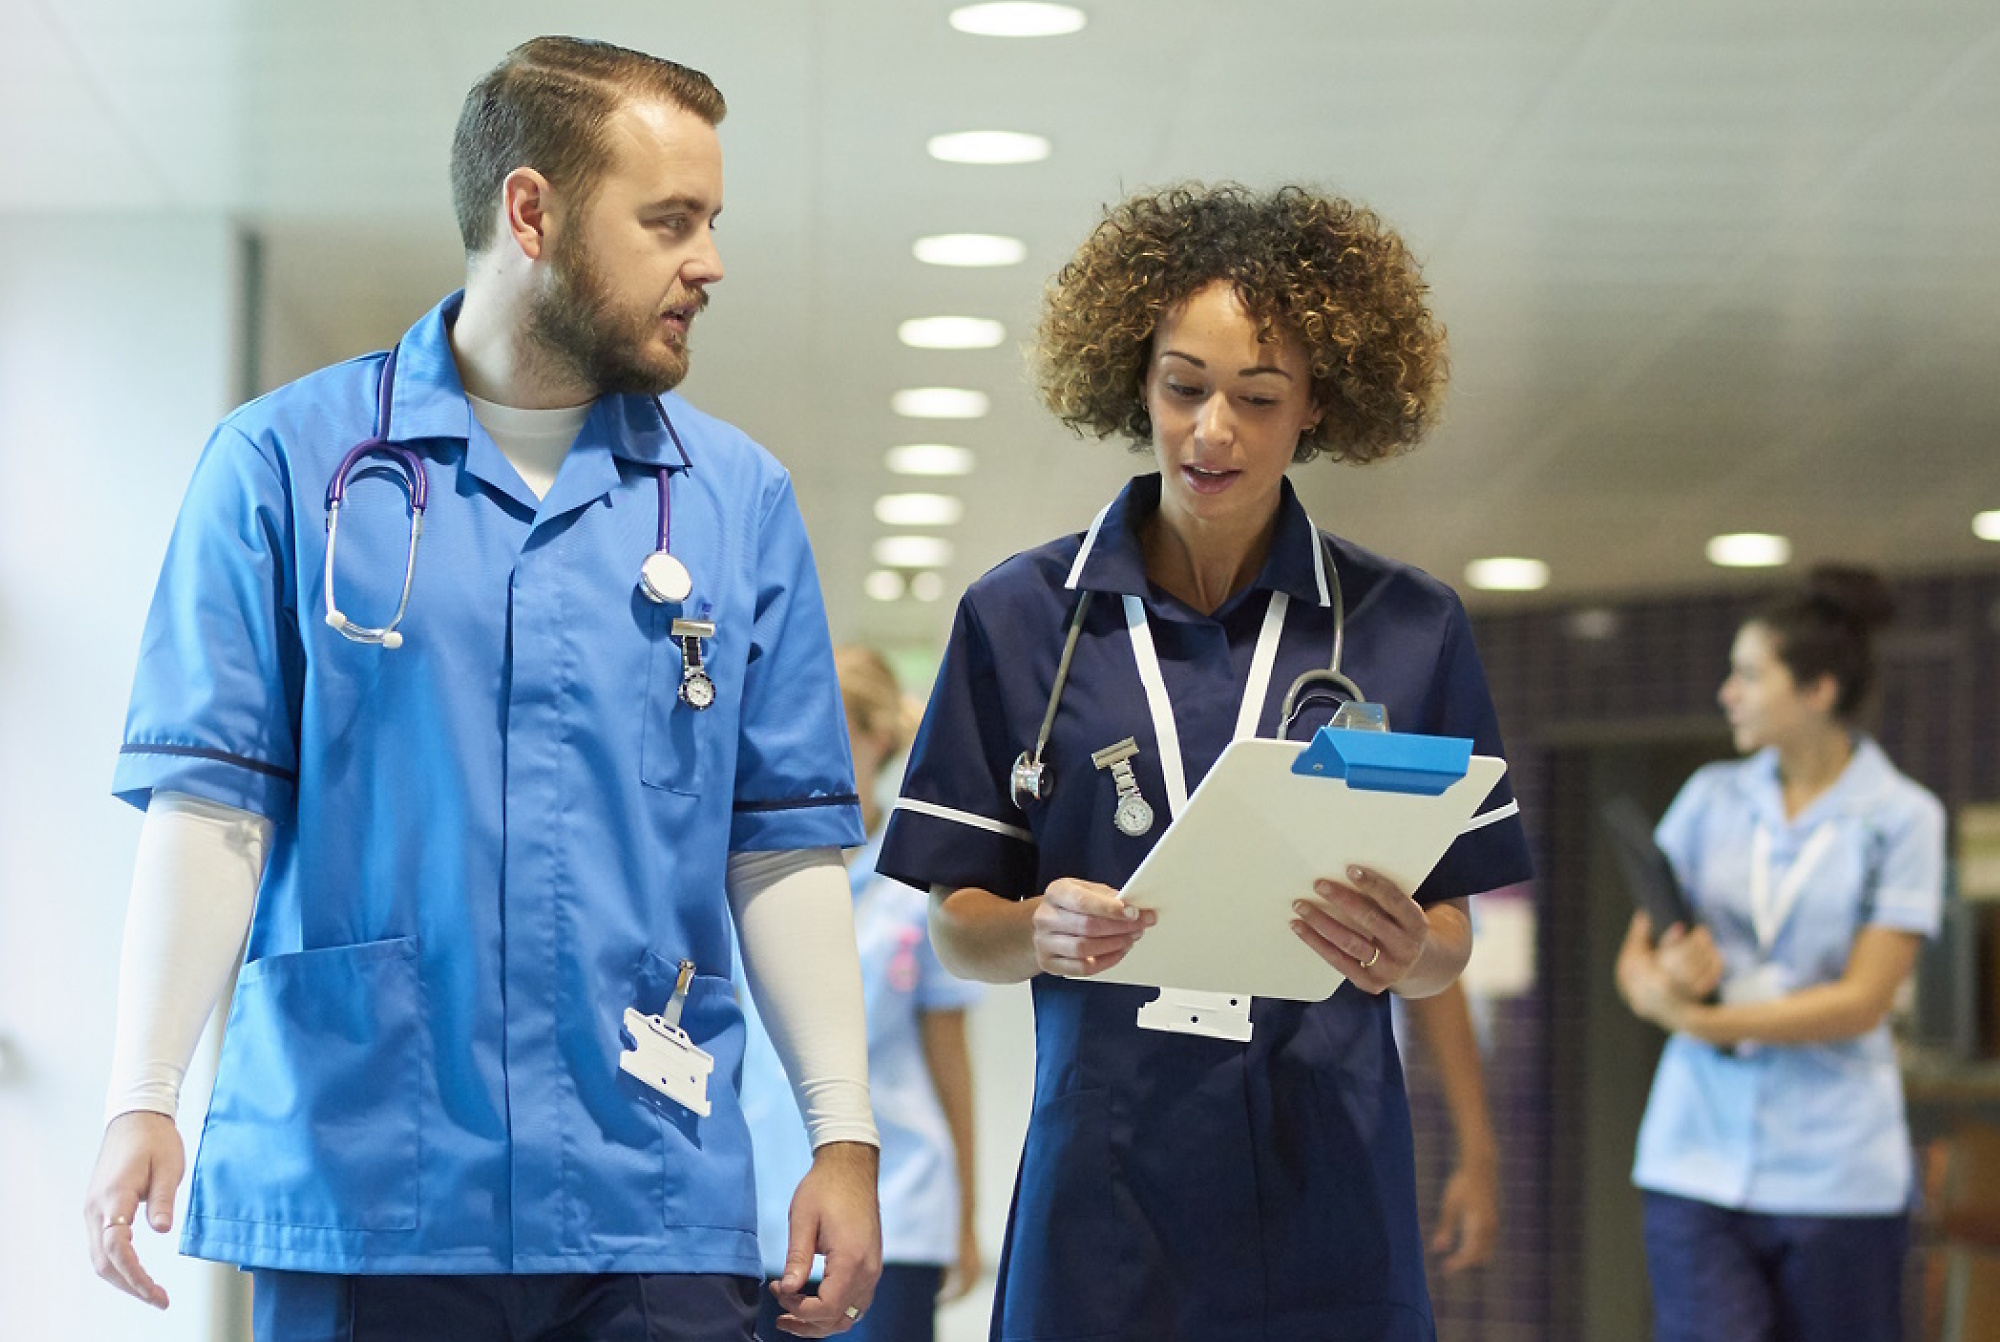 Двама медицински специалисти в сини униформи разговарят и вървят в болничен коридор, като единият държи клипборд. 